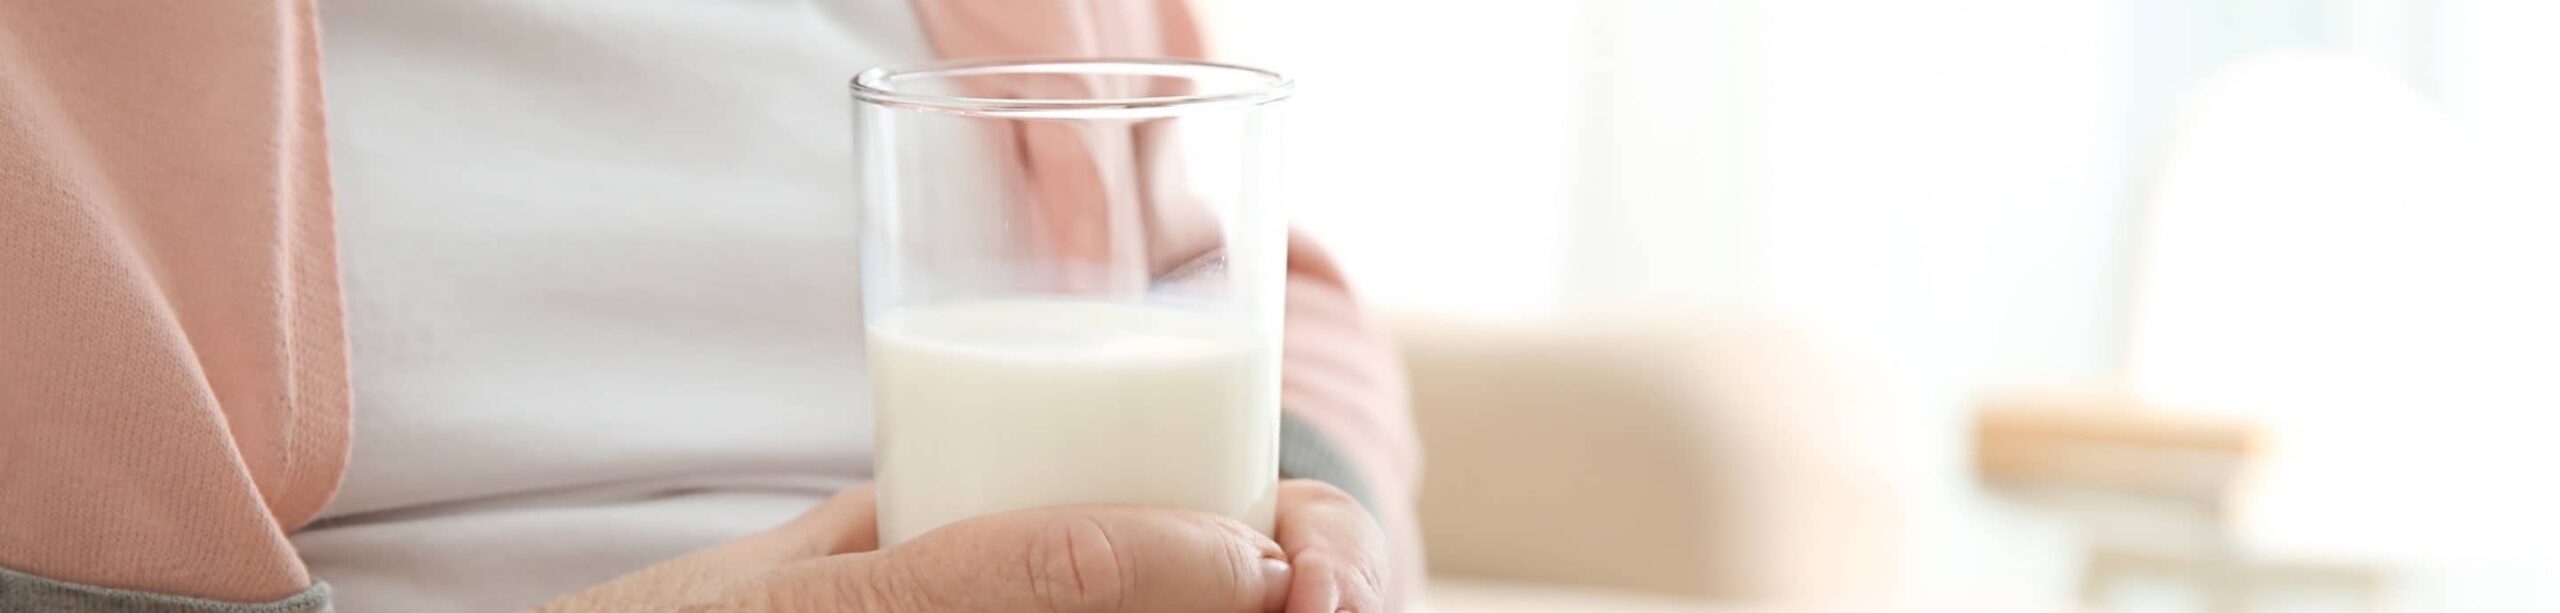 Les produits laitiers sont-ils efficaces pour le maintien d'une ossature solide ? | Clinalliance | Résidences seniors